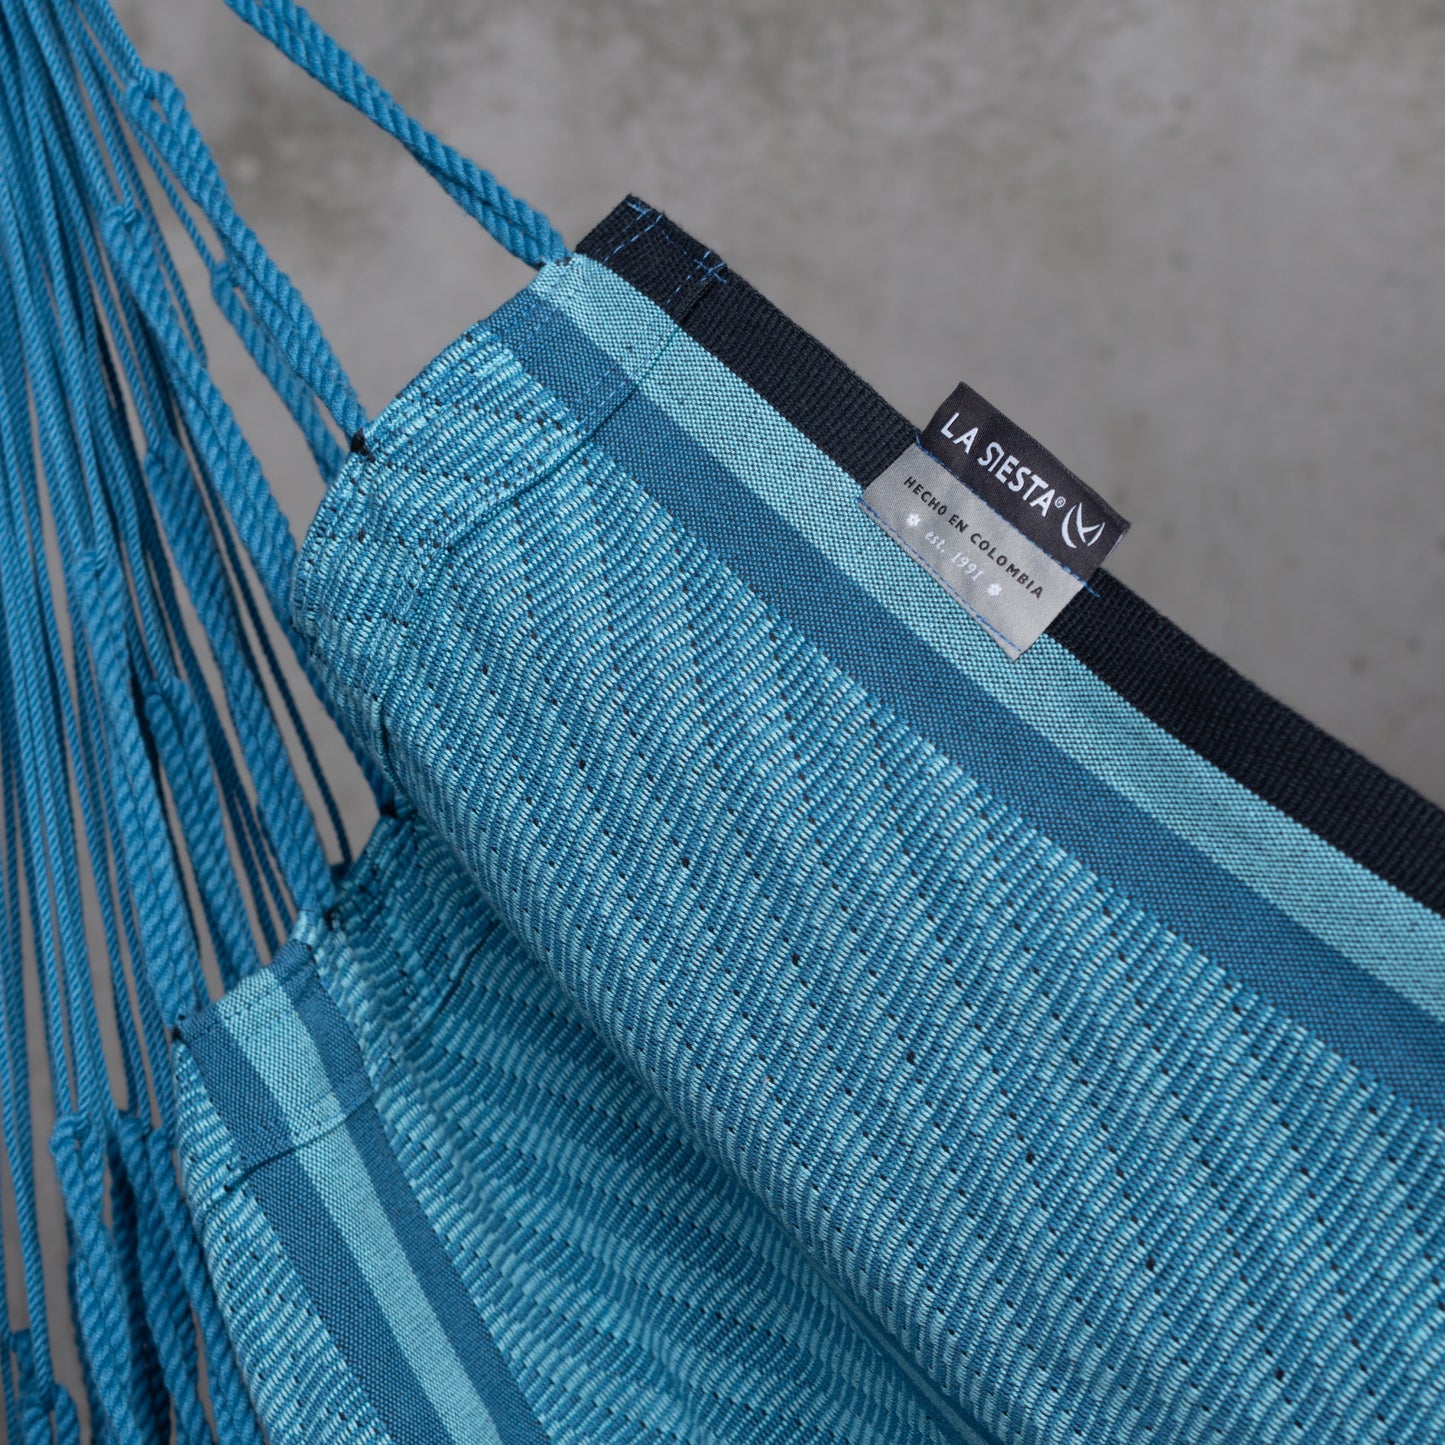 Habana Blue Zebra - Comfort hängstol i ekologisk bomull